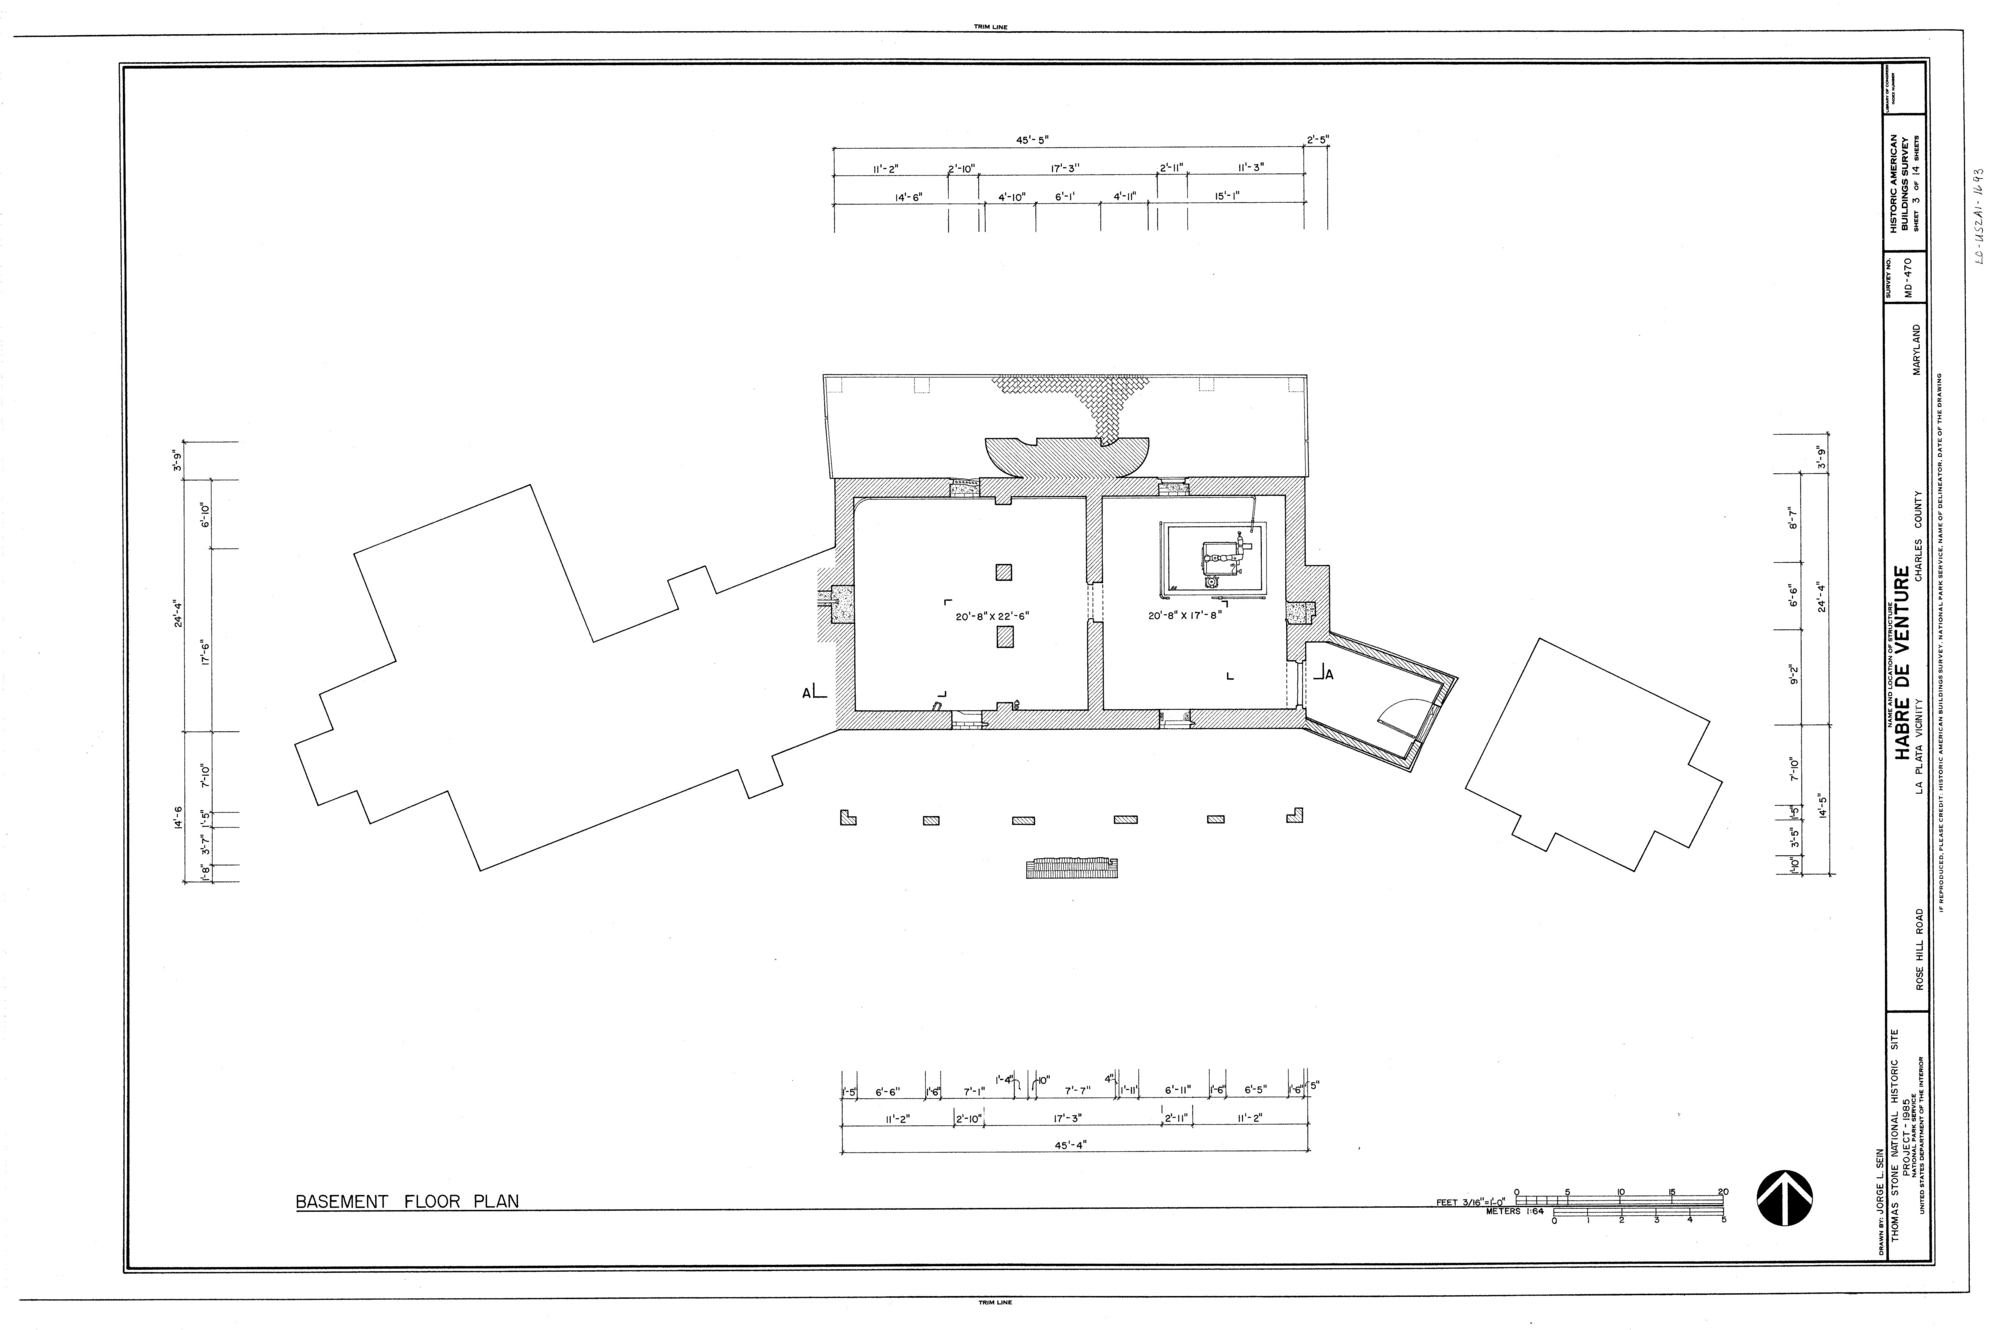 Habre de Venture, Basement Floor Plan Drawing